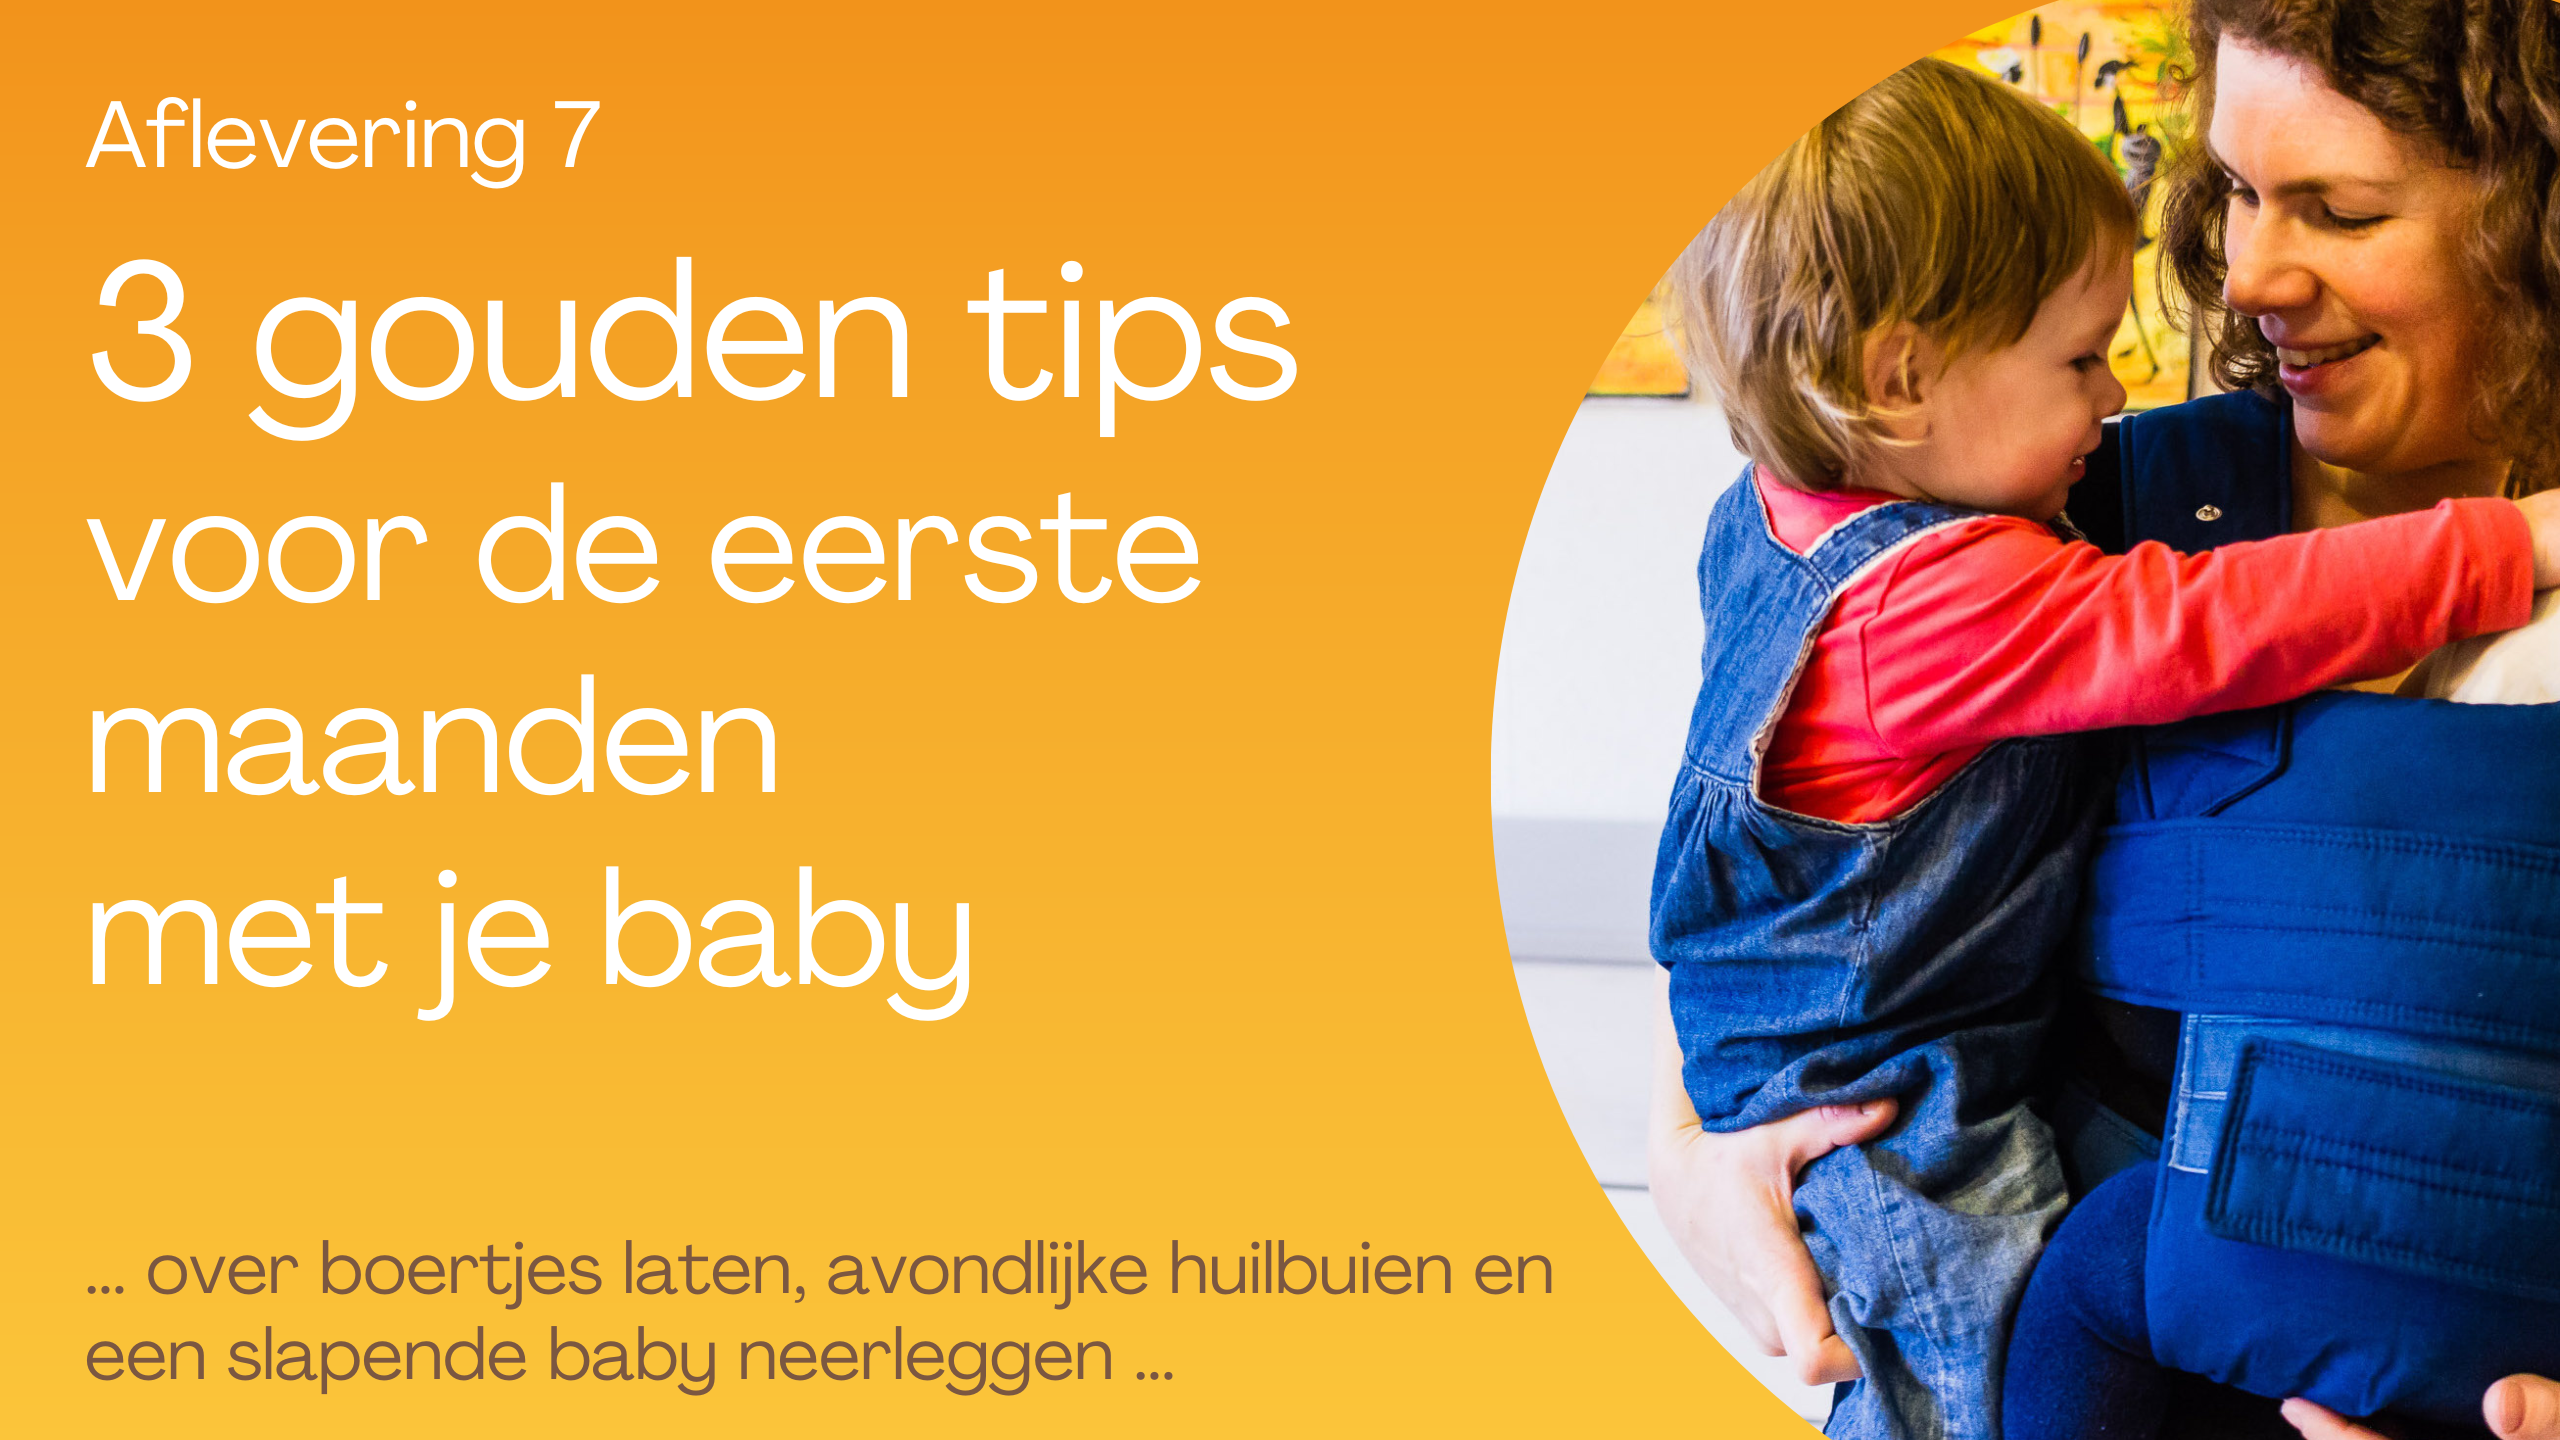 Je bekijkt nu 3 gouden tips voor de eerste maanden met je baby!